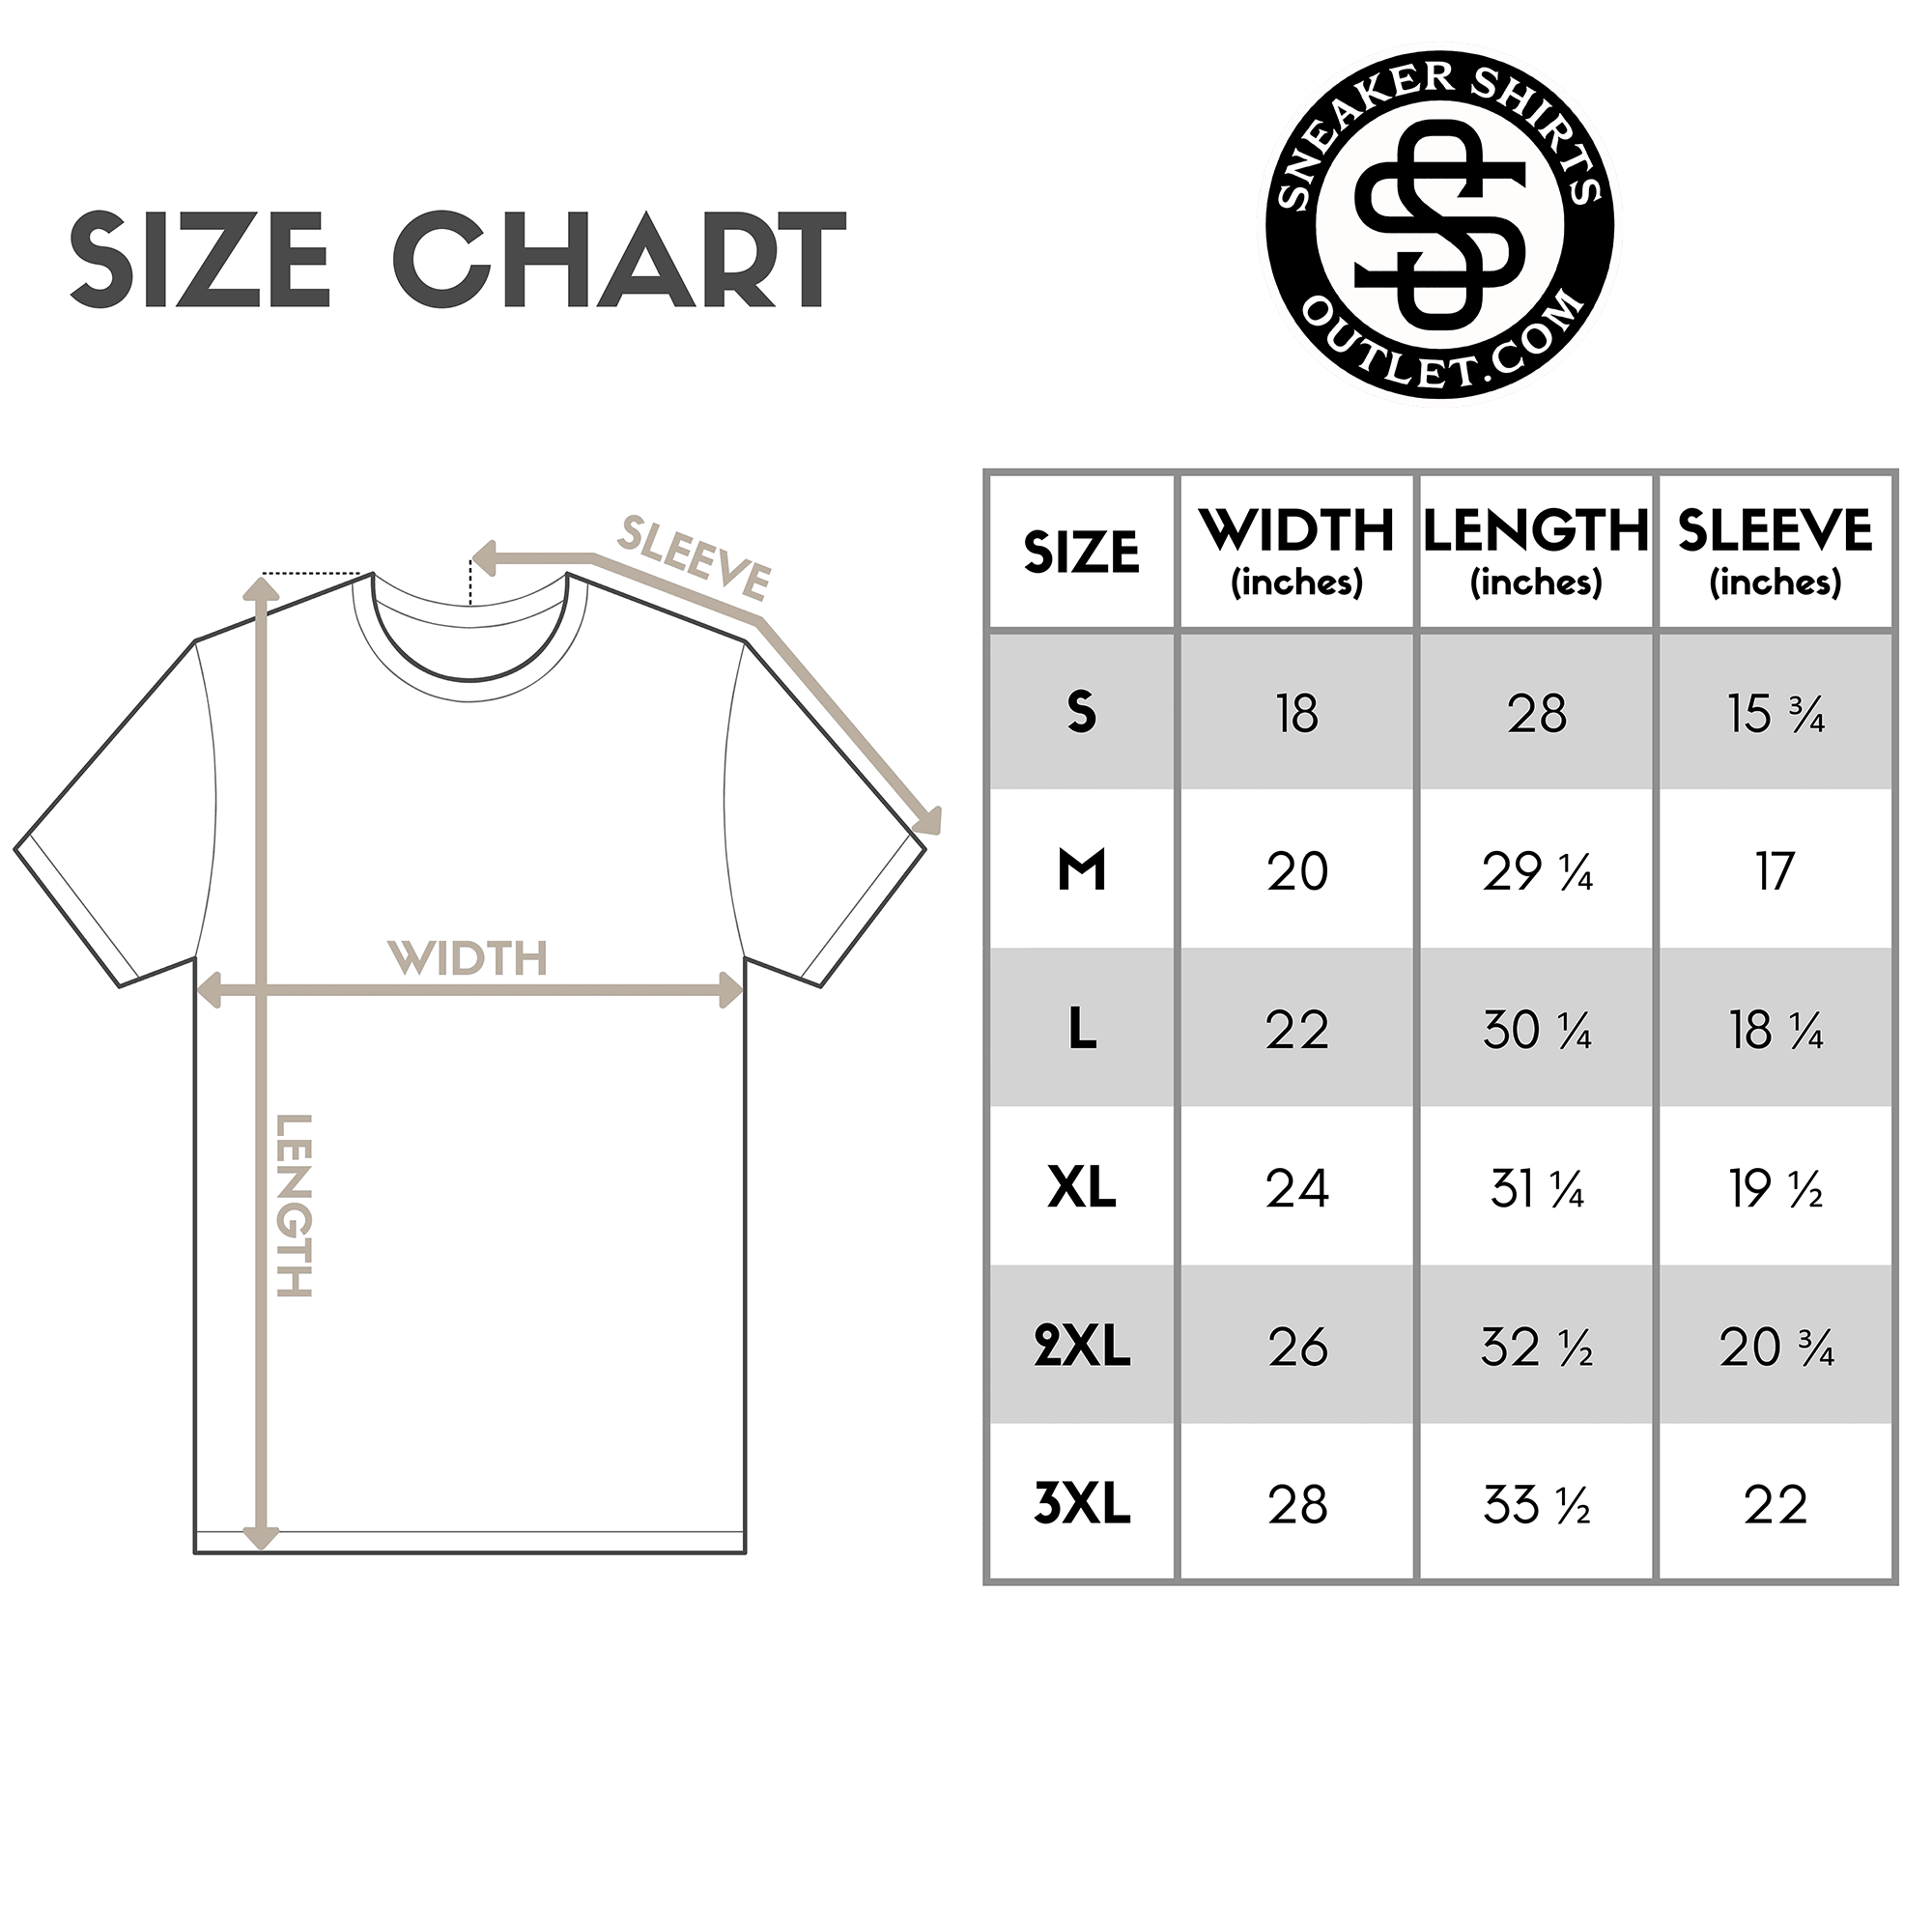 13 Drip Shirt Jordan 1s Retro Del Sol size chart photo